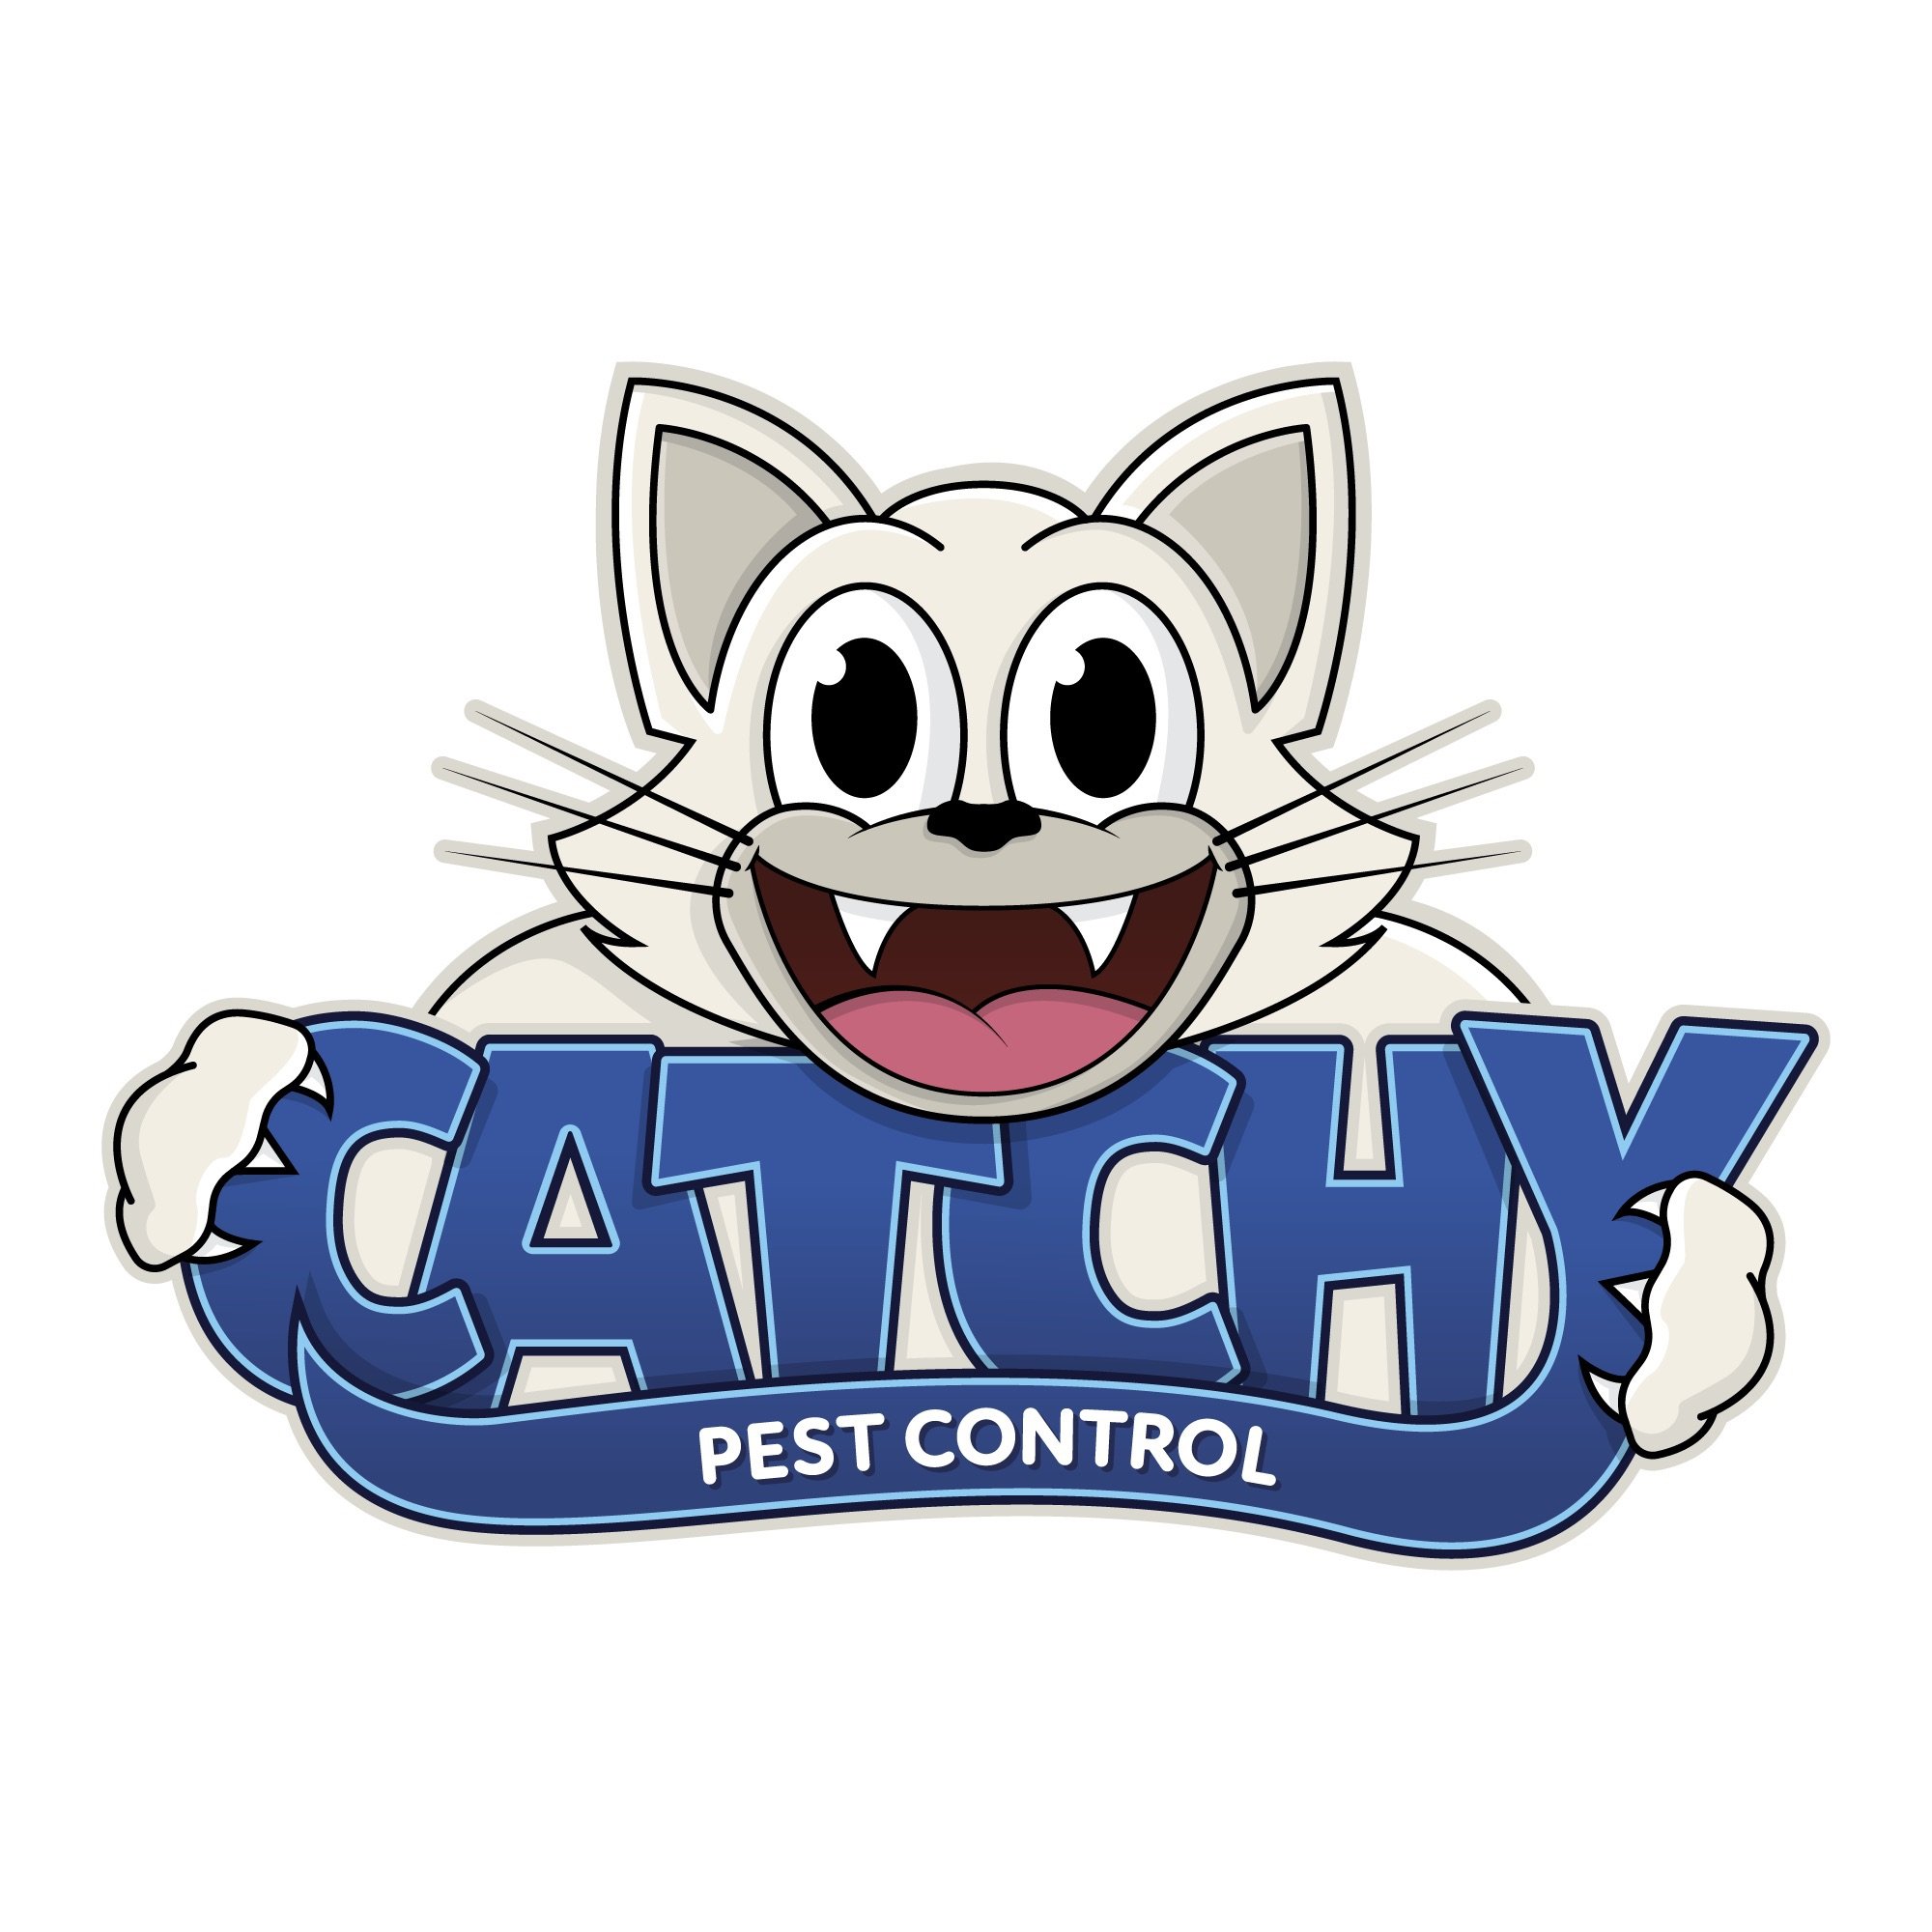 Catchy Pest Control Logo